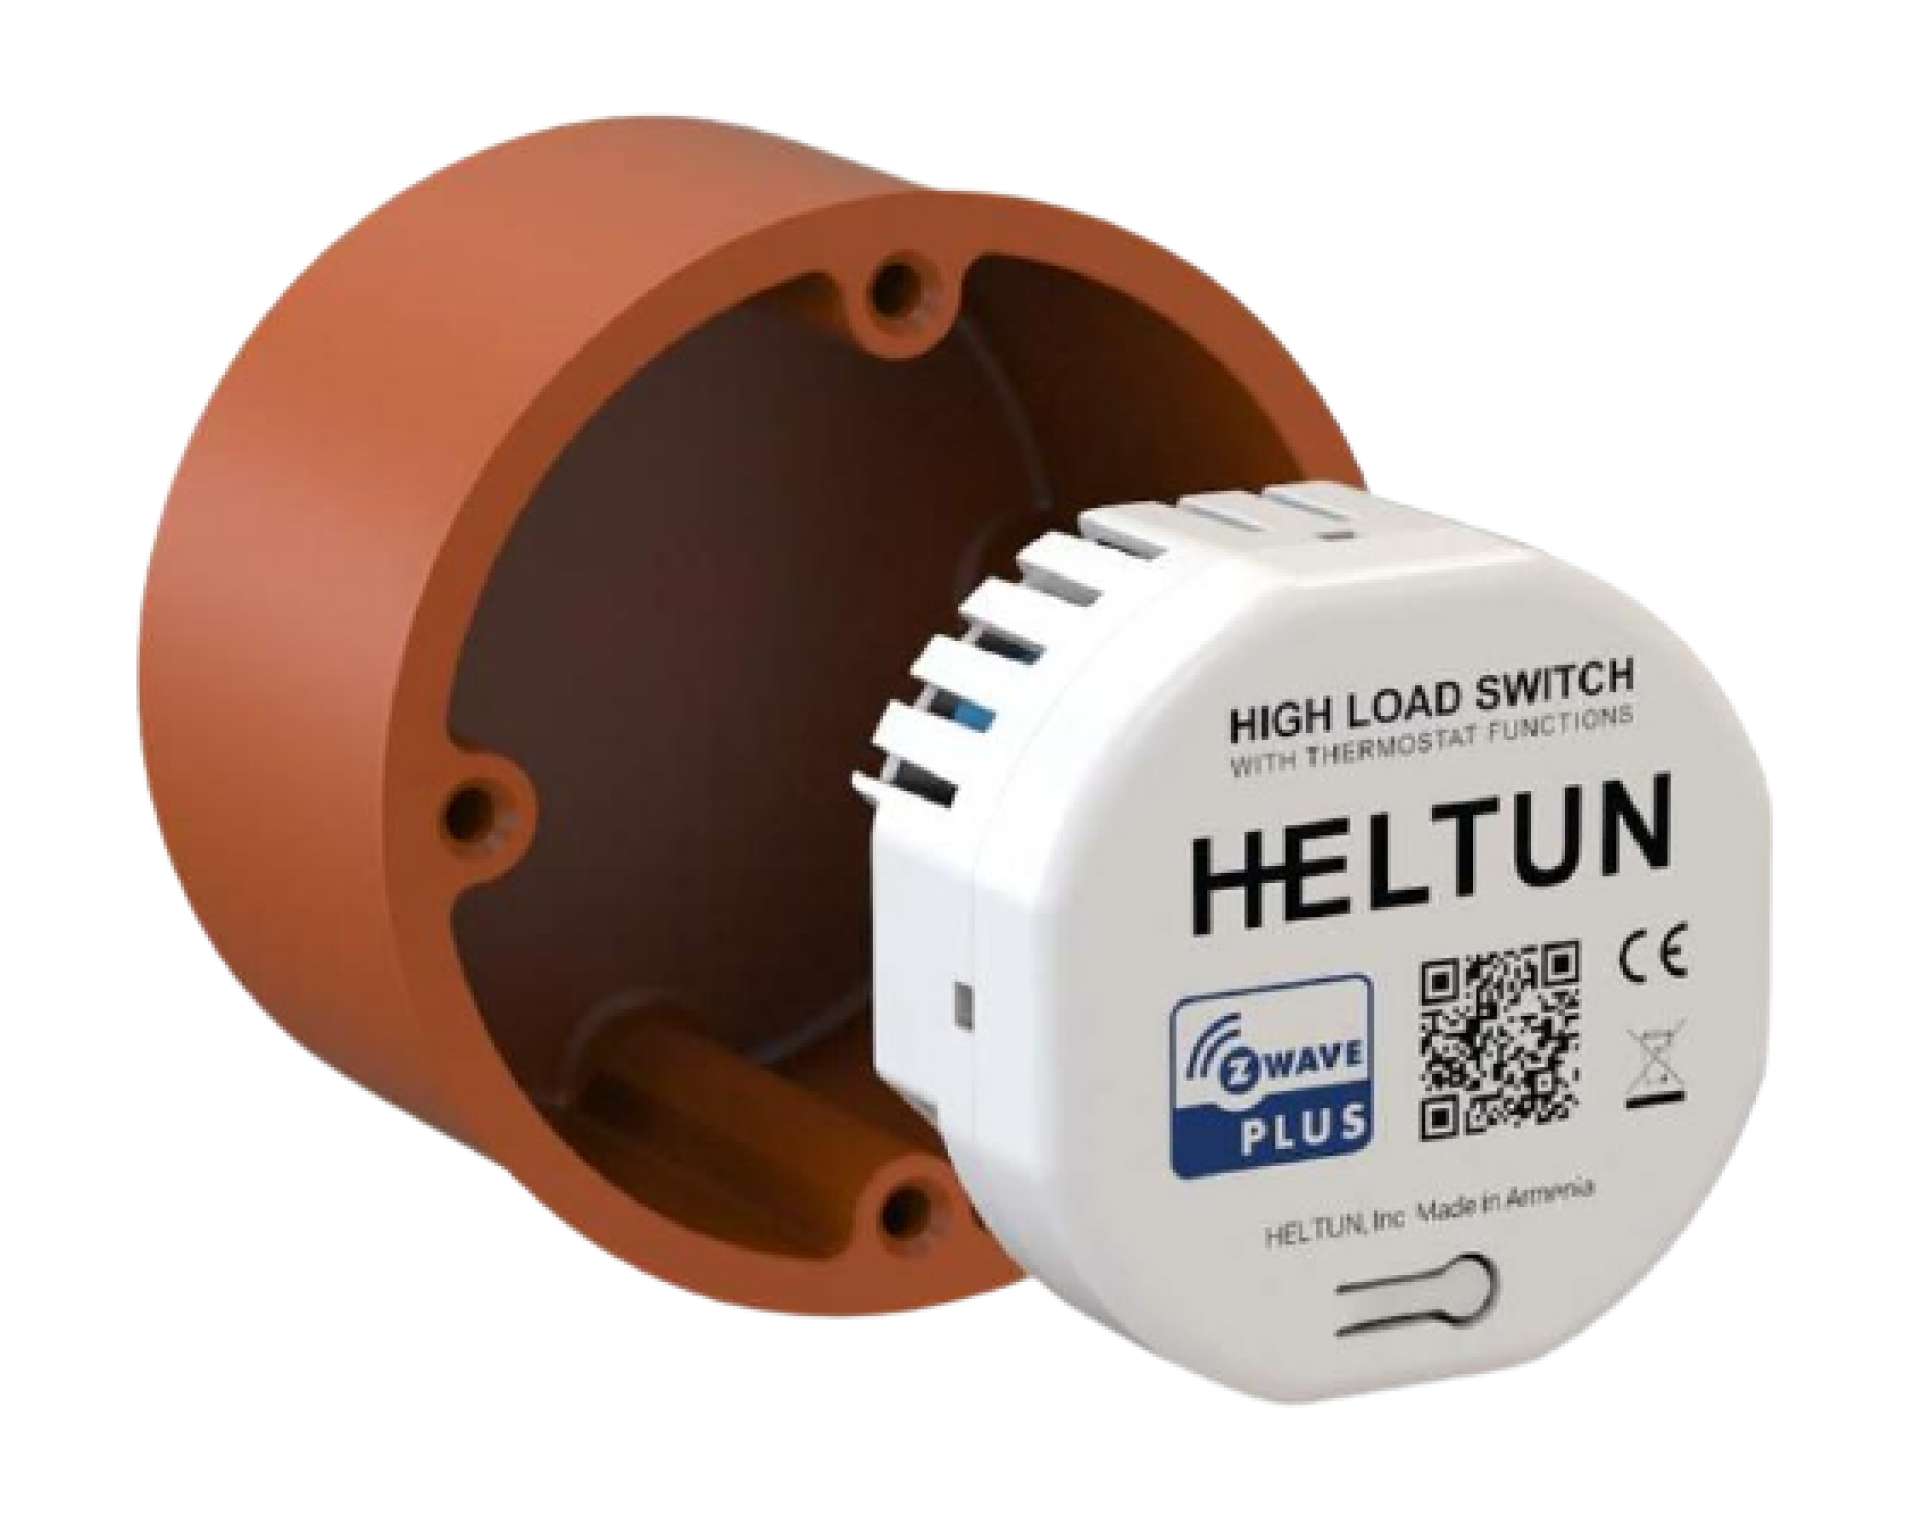 Heltun HLS-01 